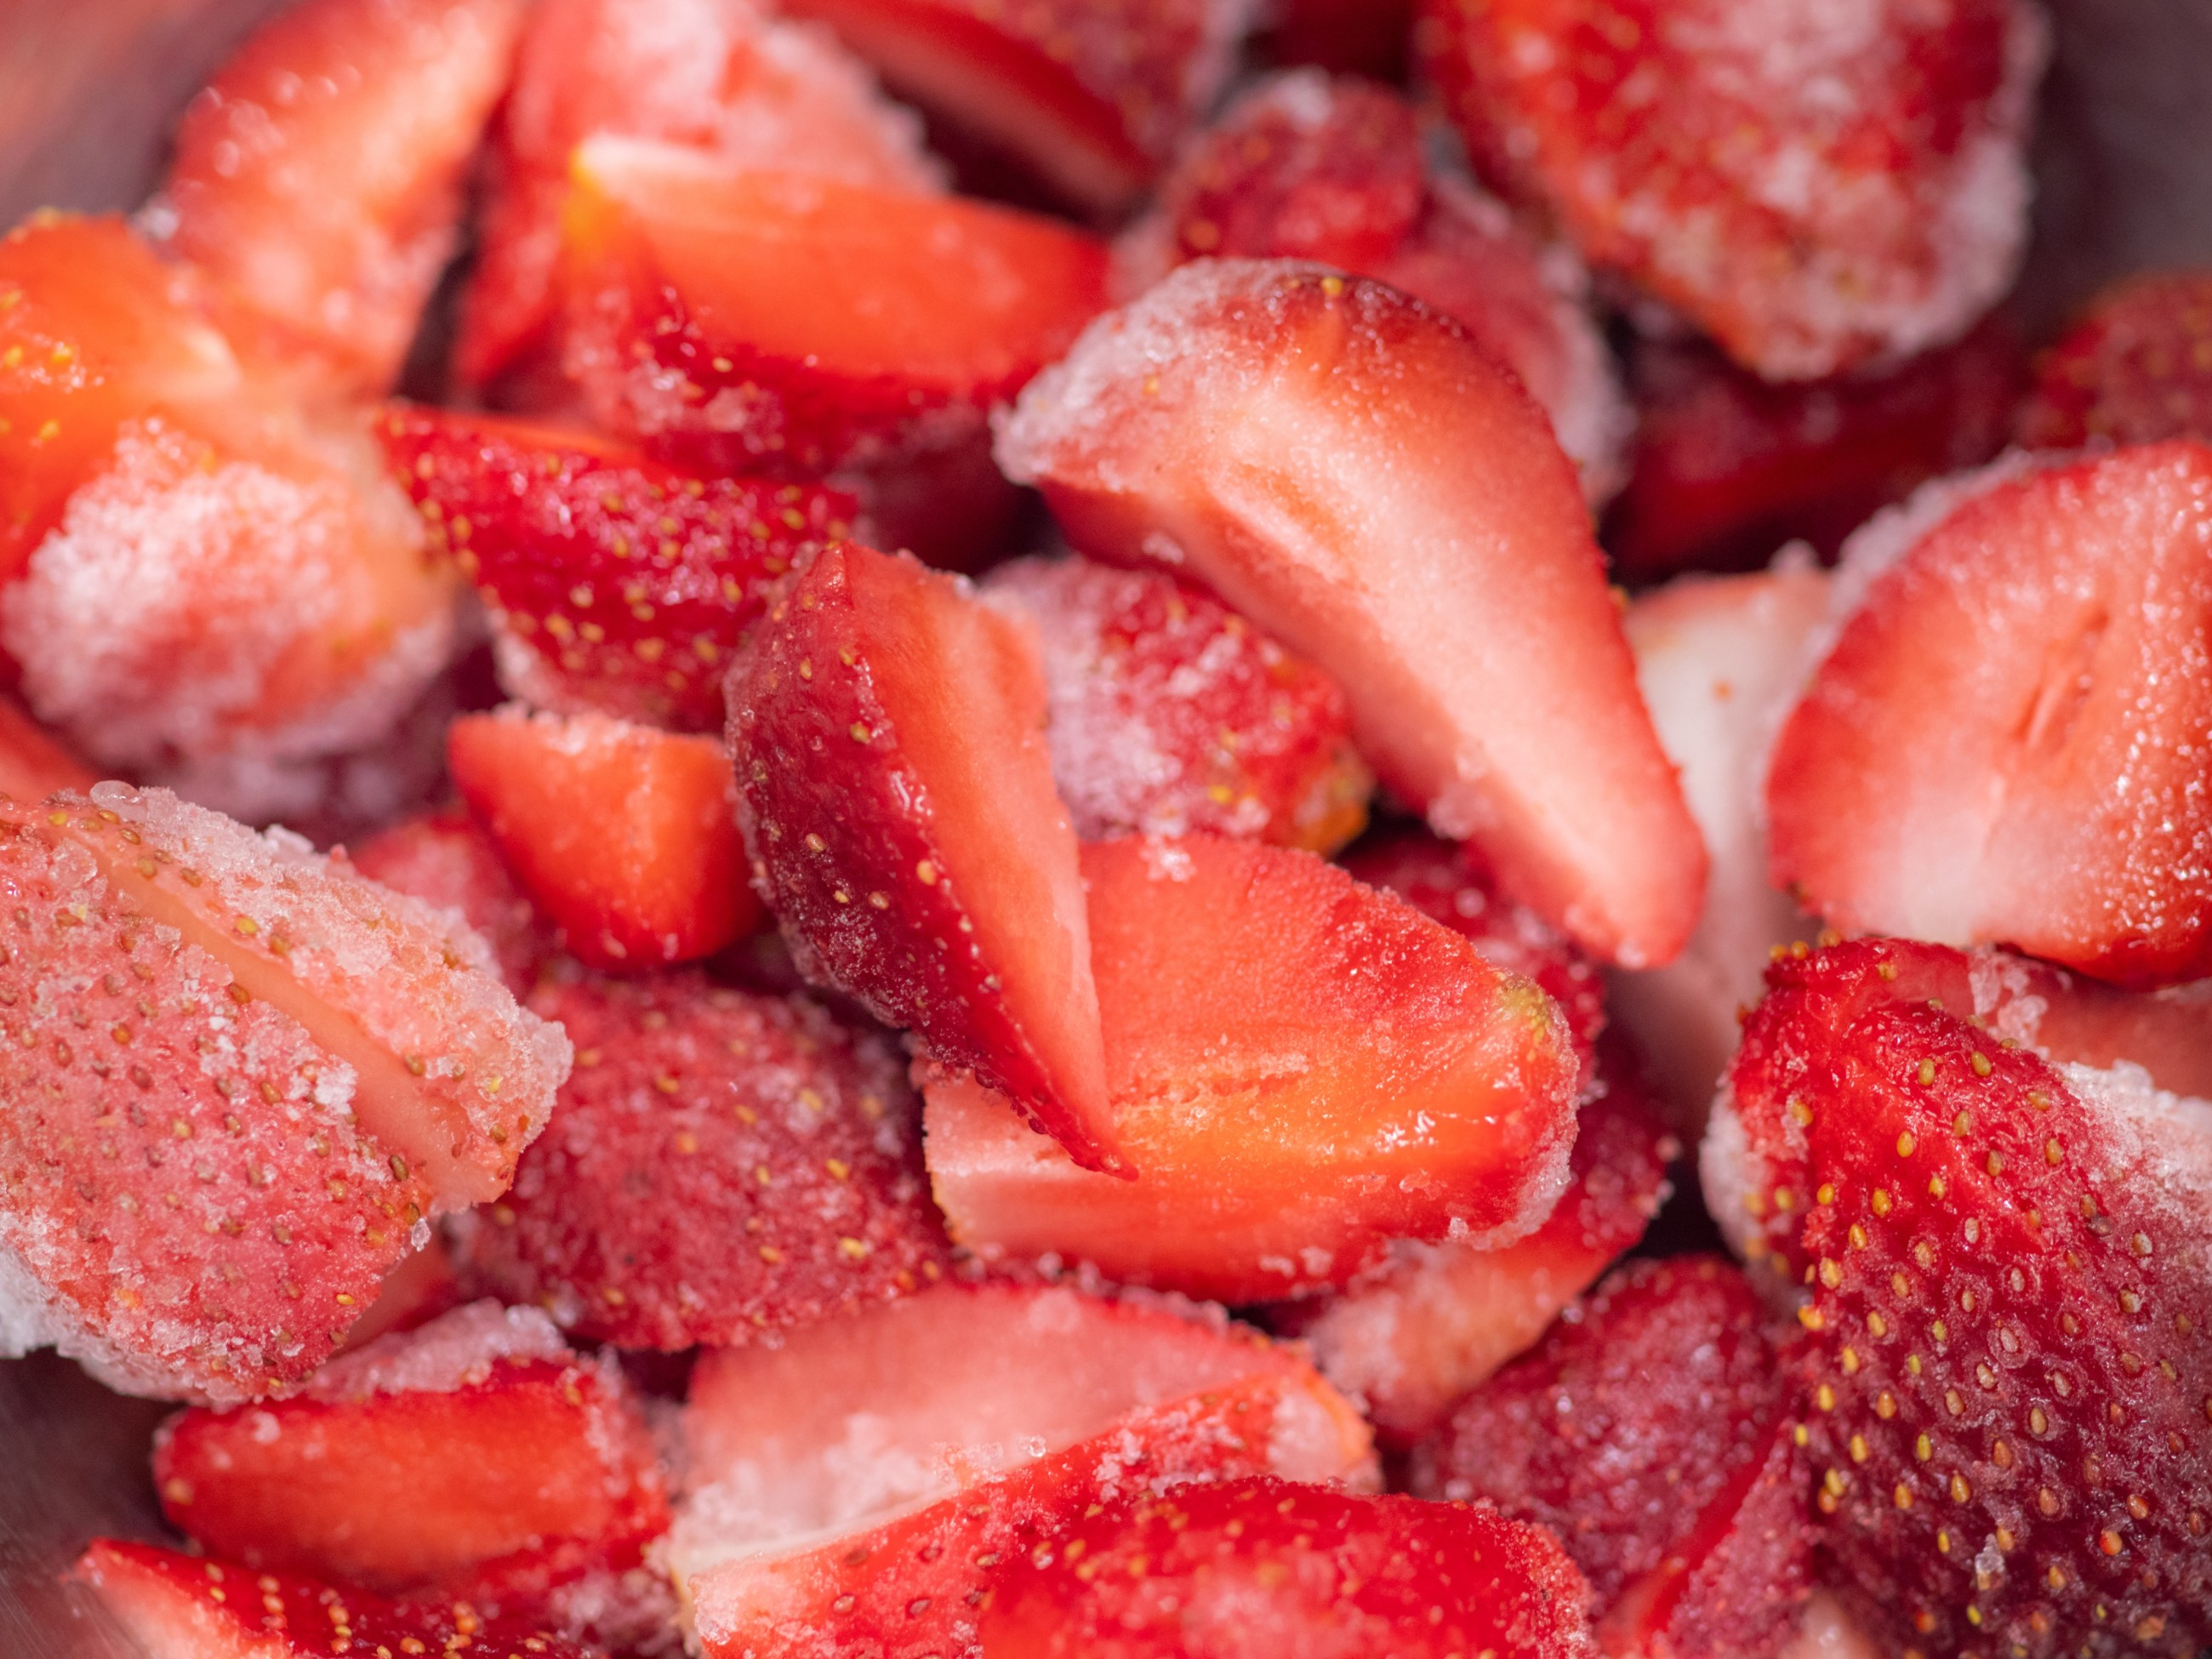 Retiran fresas y cócteles frutas congeladas por posible con hepatitis A - El NY